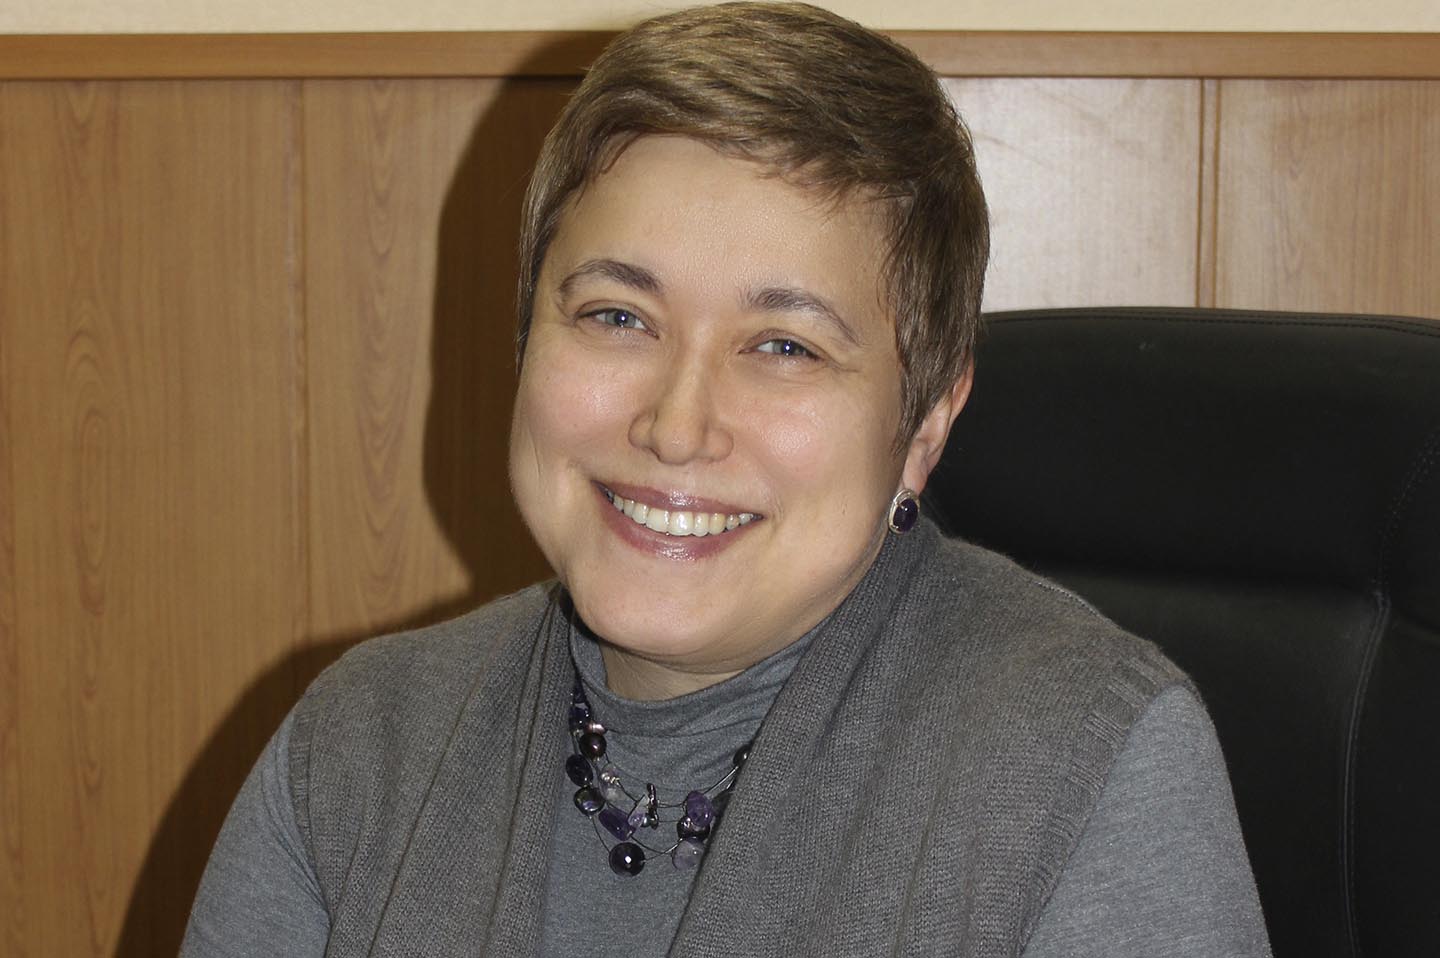 Елена Митюшкина, директор НКК, участник сериала про технологии Microsoft "Делаем бизнес лучше"